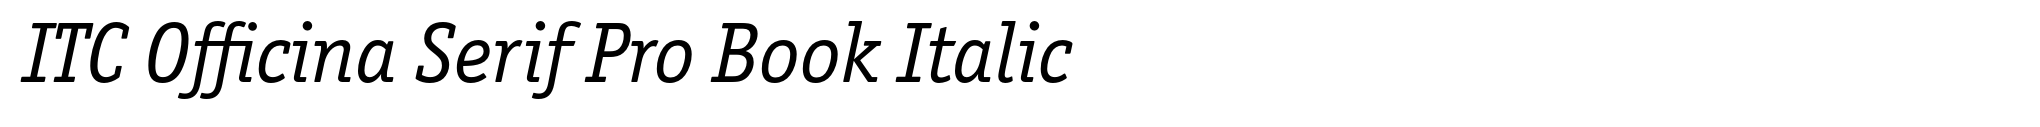 ITC Officina Serif Pro Book Italic image